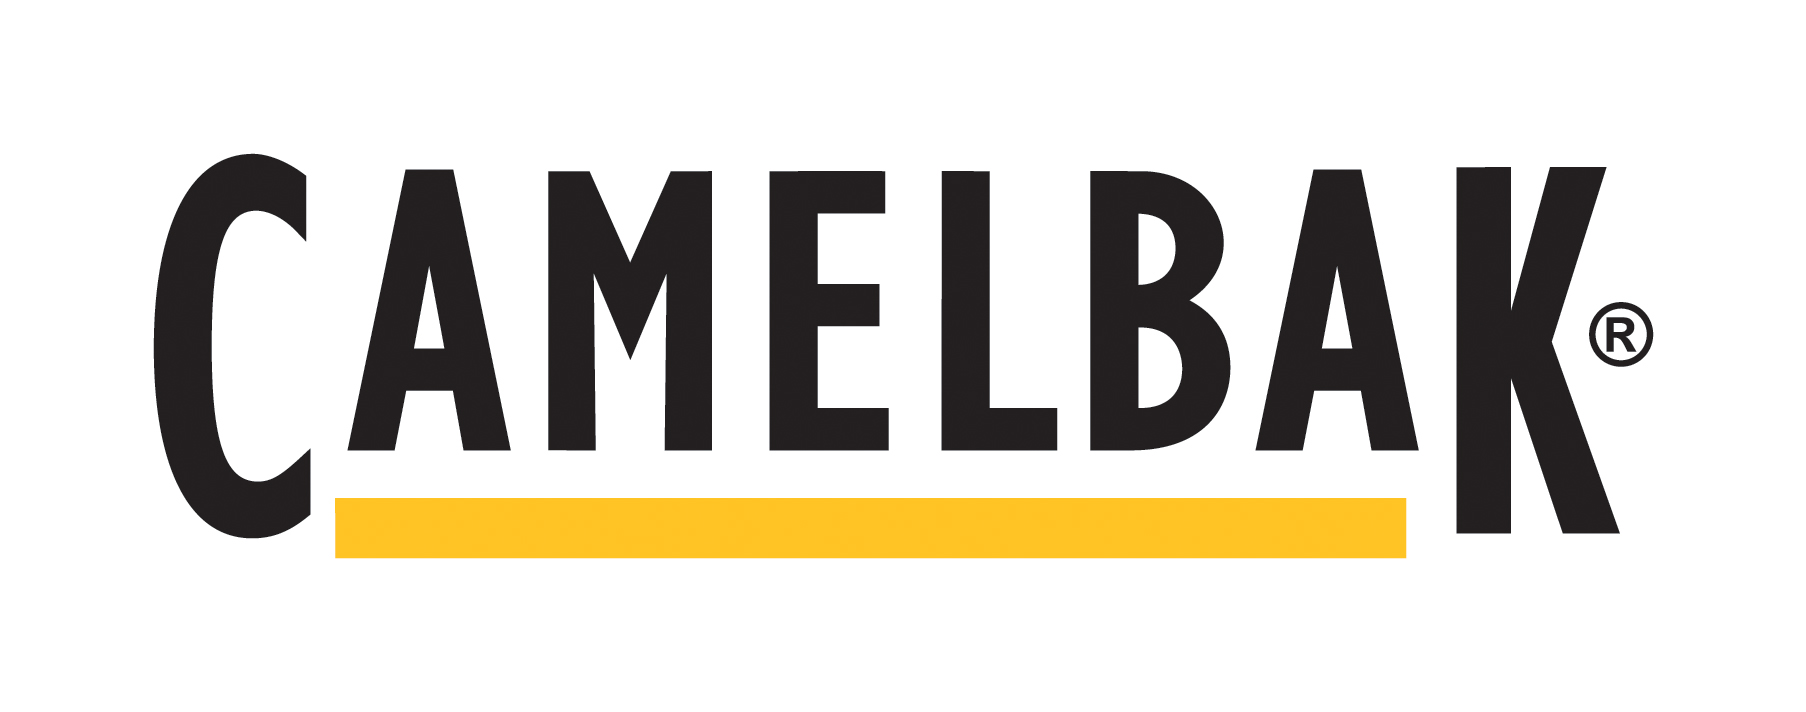 camelbak-logo.jpg